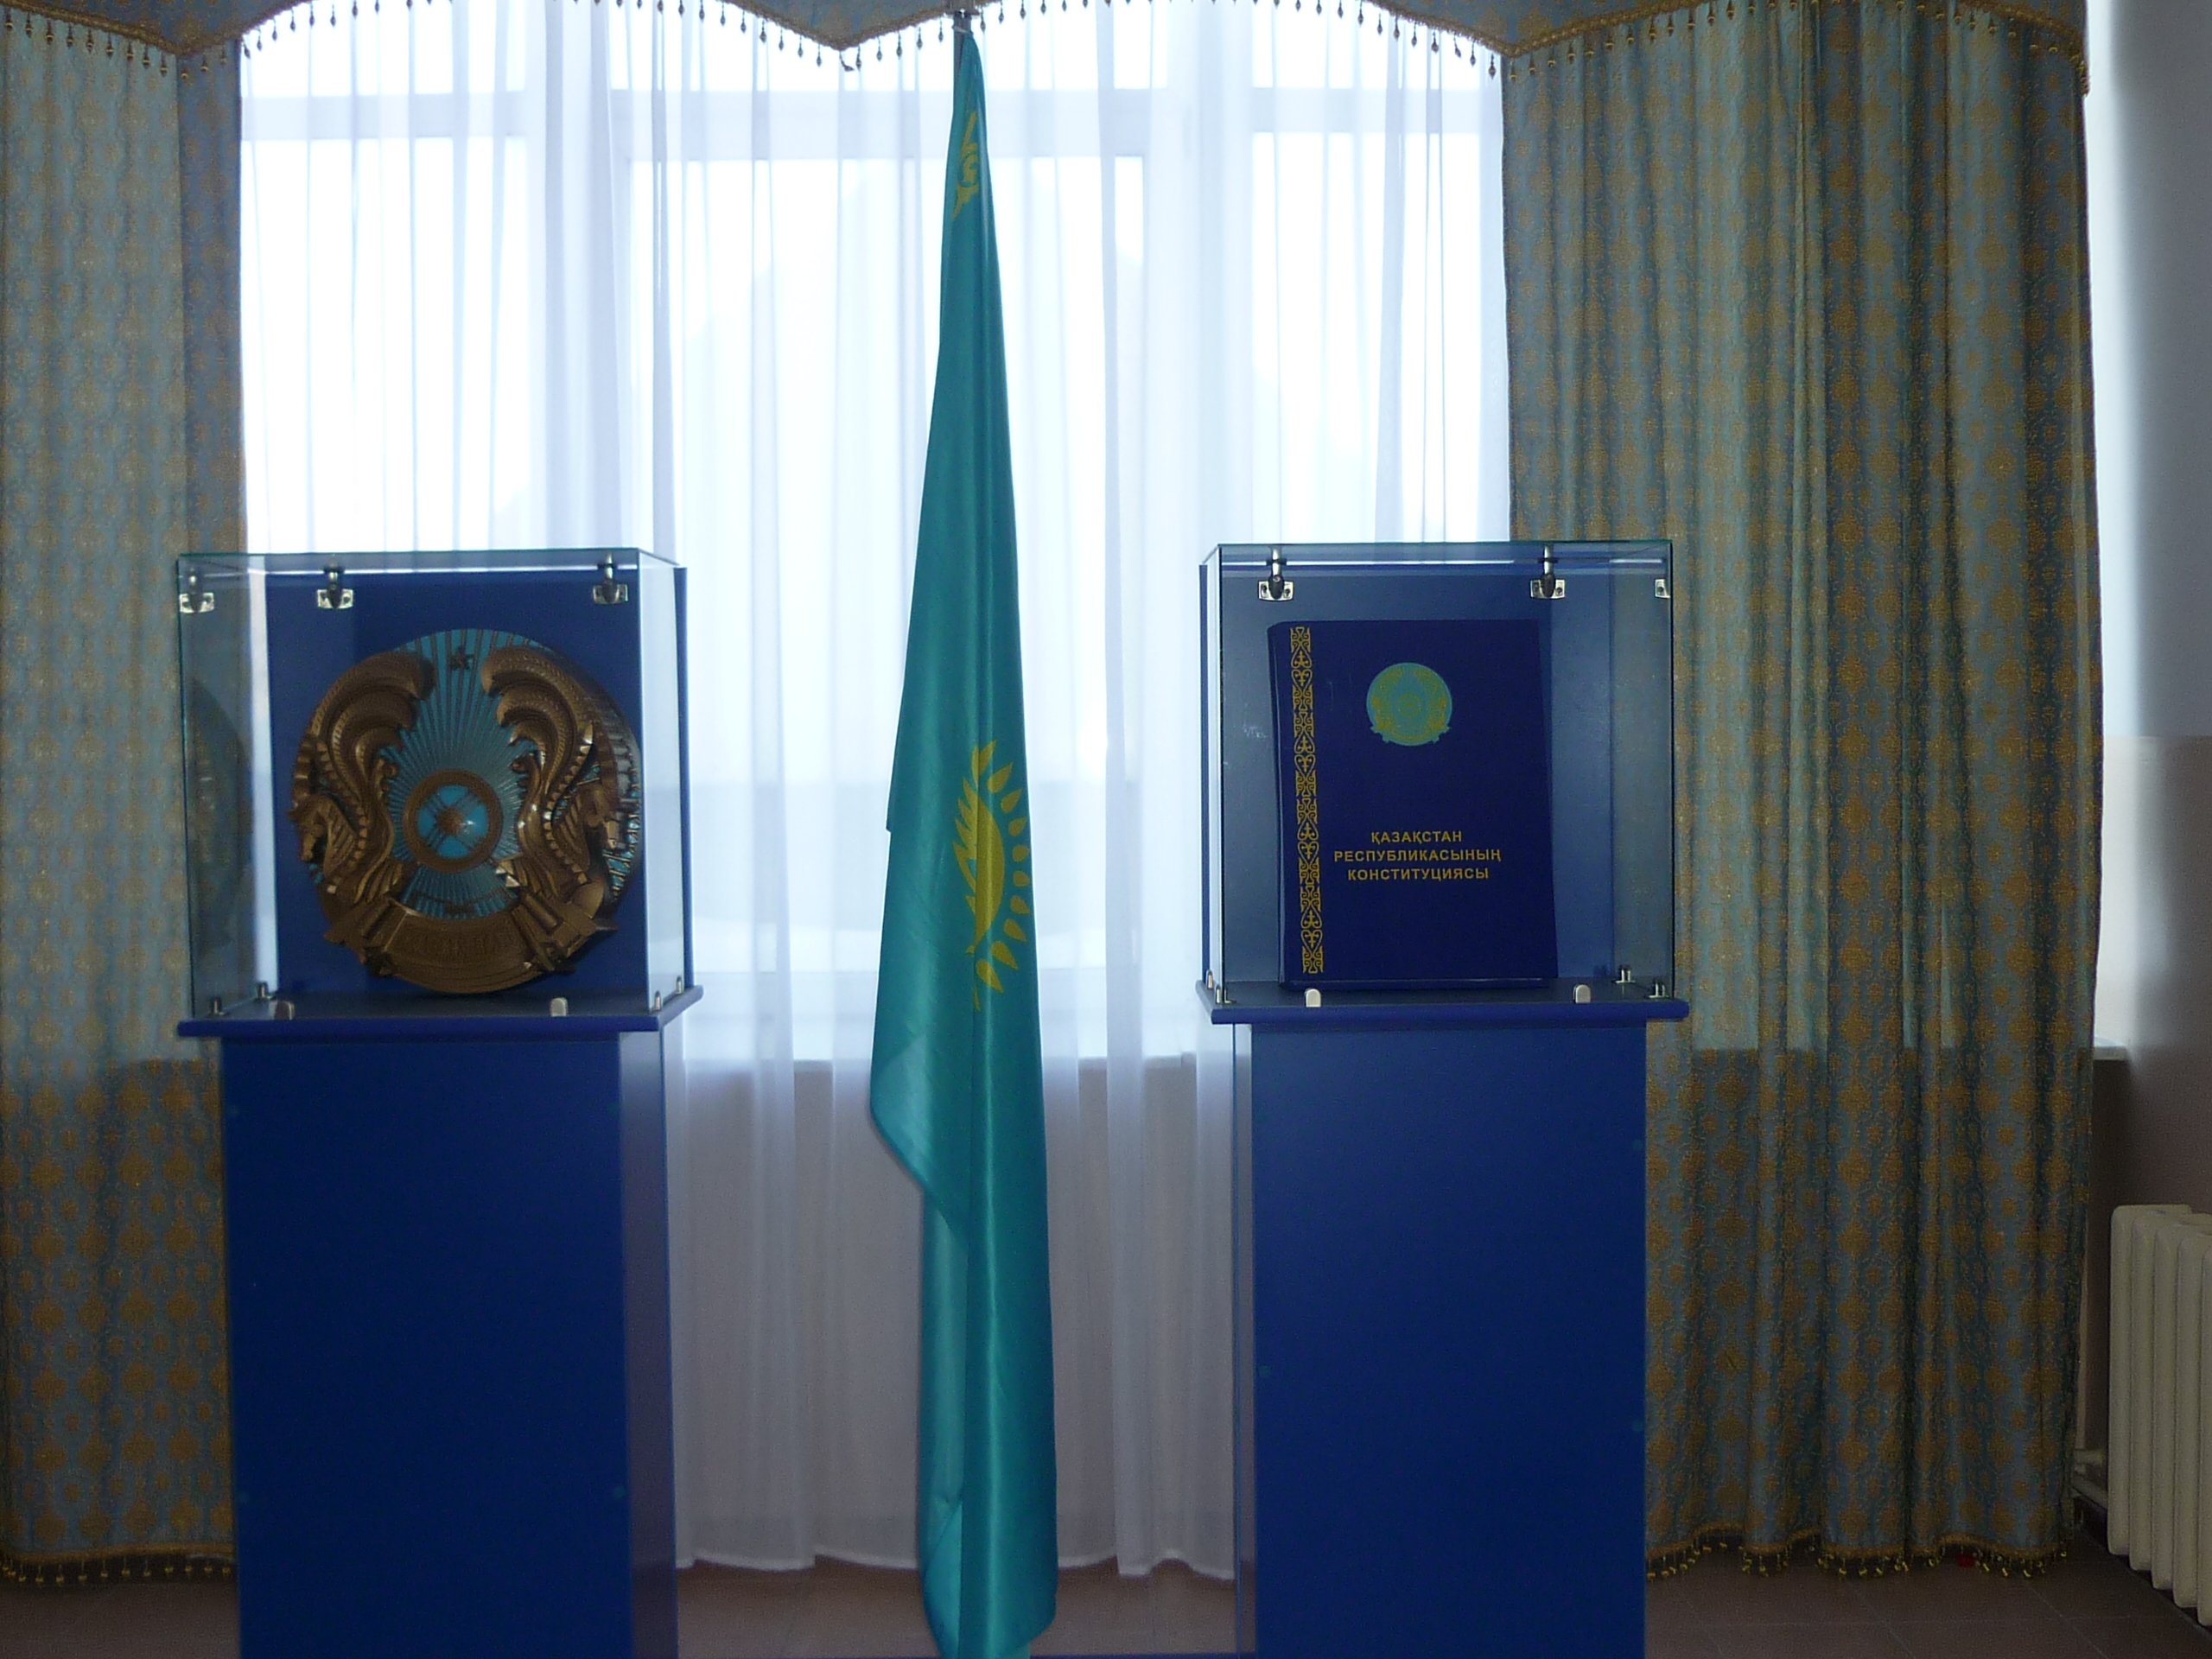 Проект на тему : «Я- гражданин Республики Казахстан» ( по истории государственных символов Республики Казахстан)